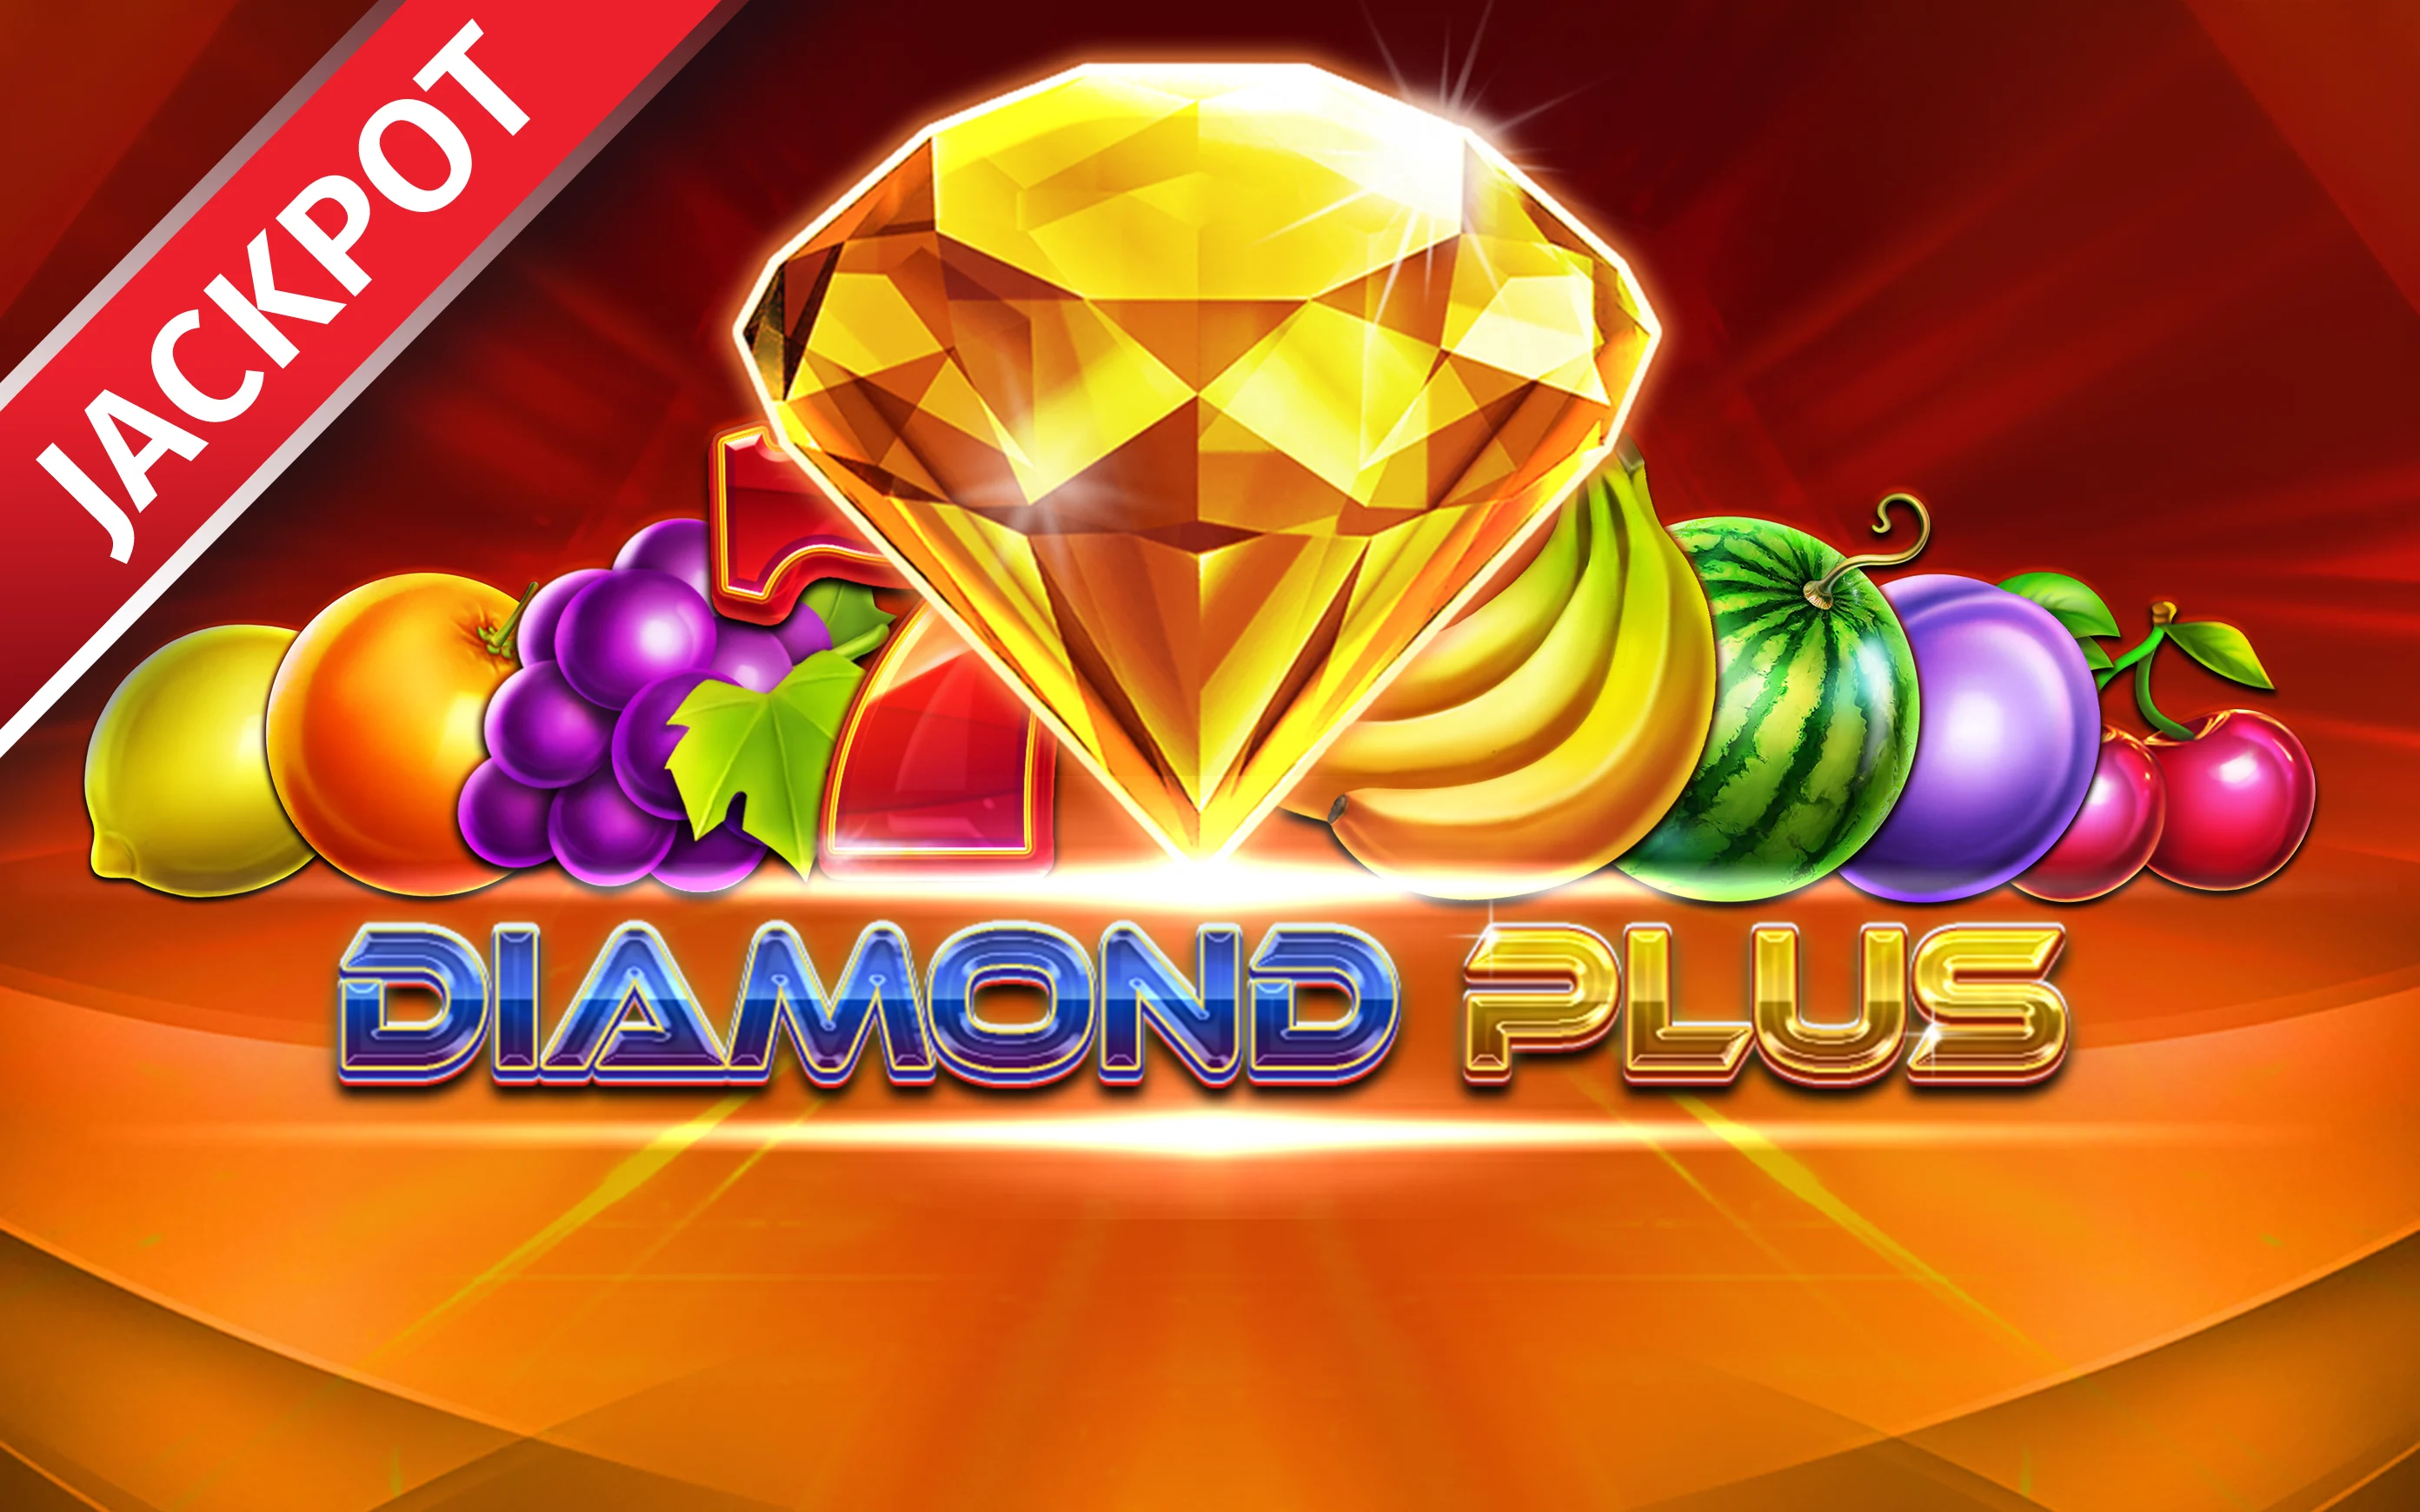 Zagraj w Diamond Plus w kasynie online Starcasino.be